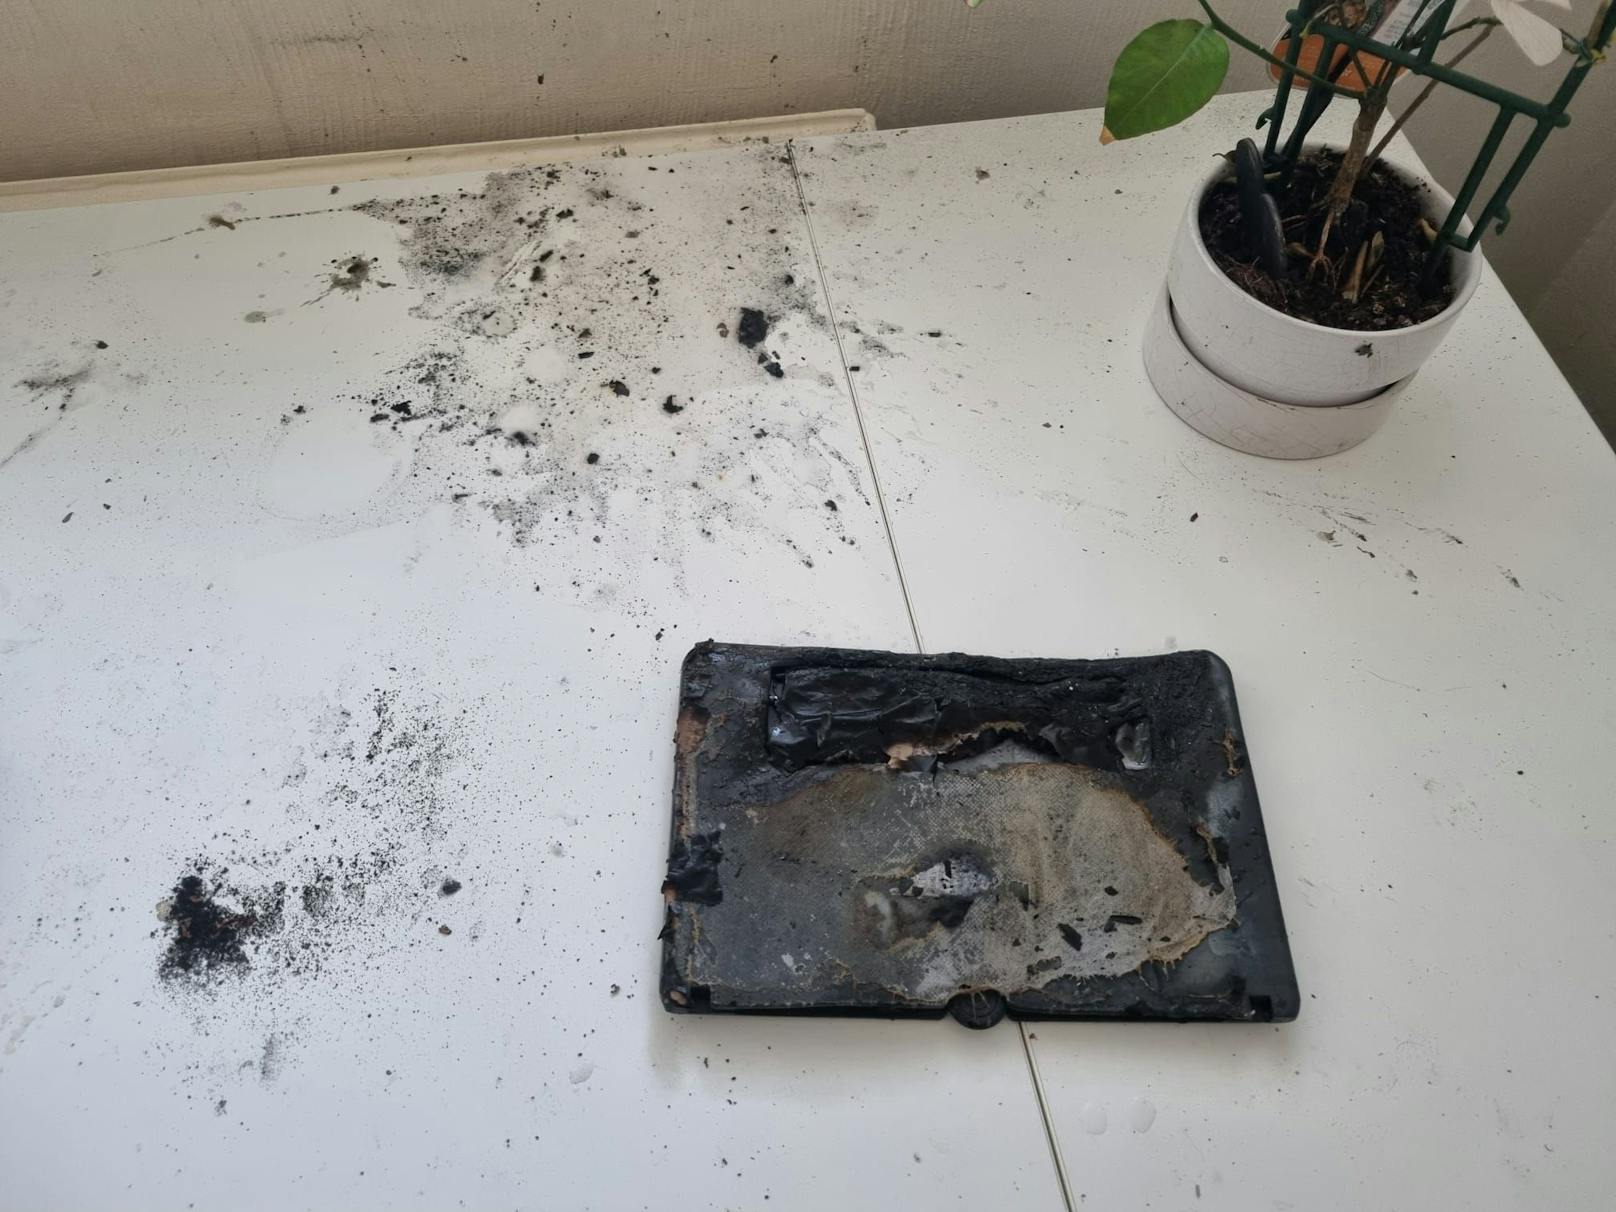 Der Akku des Smartphones explodierte, als die Wienerin unter der Dusche stand. Im Anschluss brannte es auf der Fensterbank.